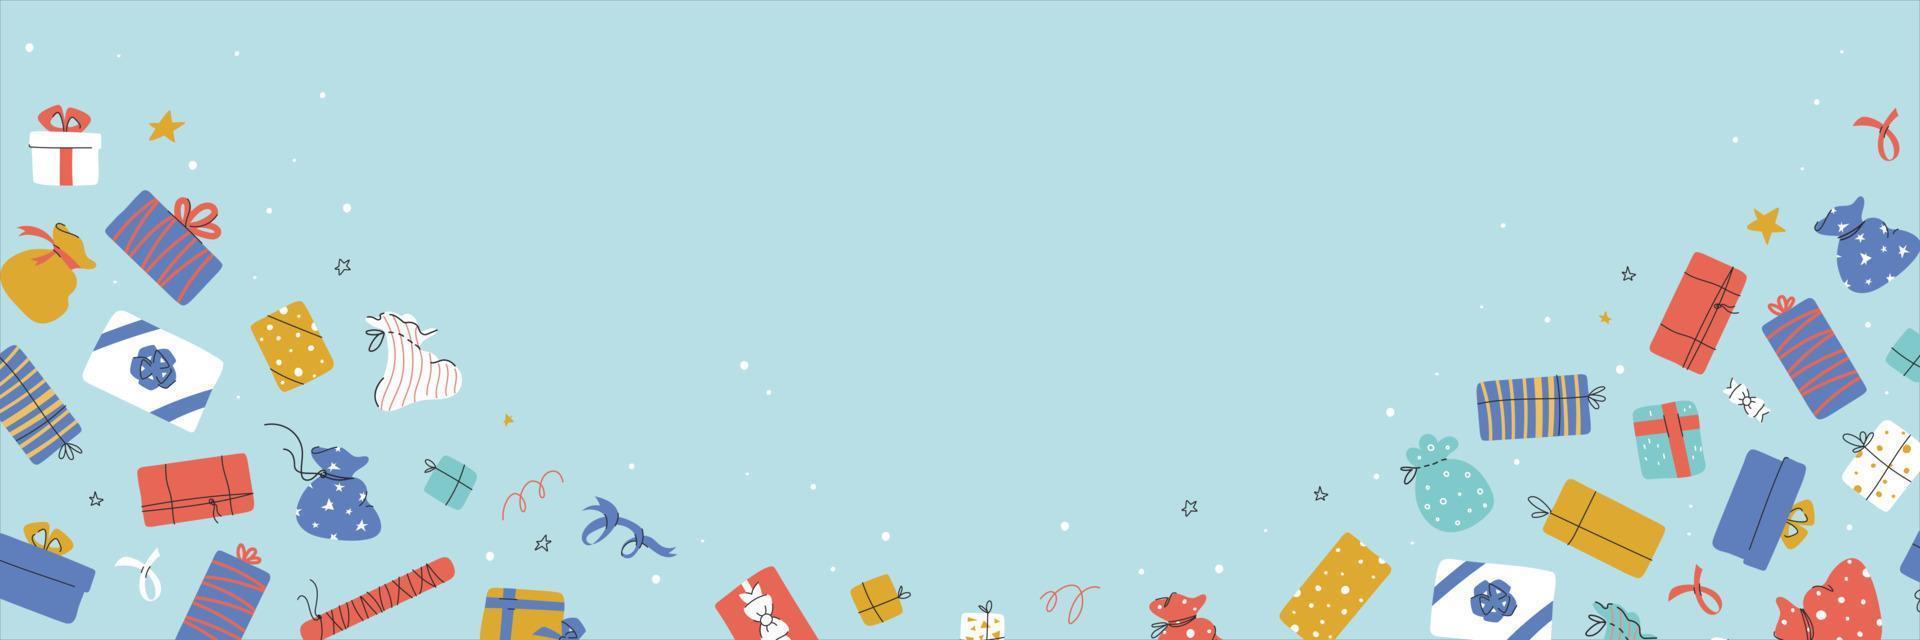 banner vectorial con elementos de fiesta, regalos navideños, cajas sorpresa vector